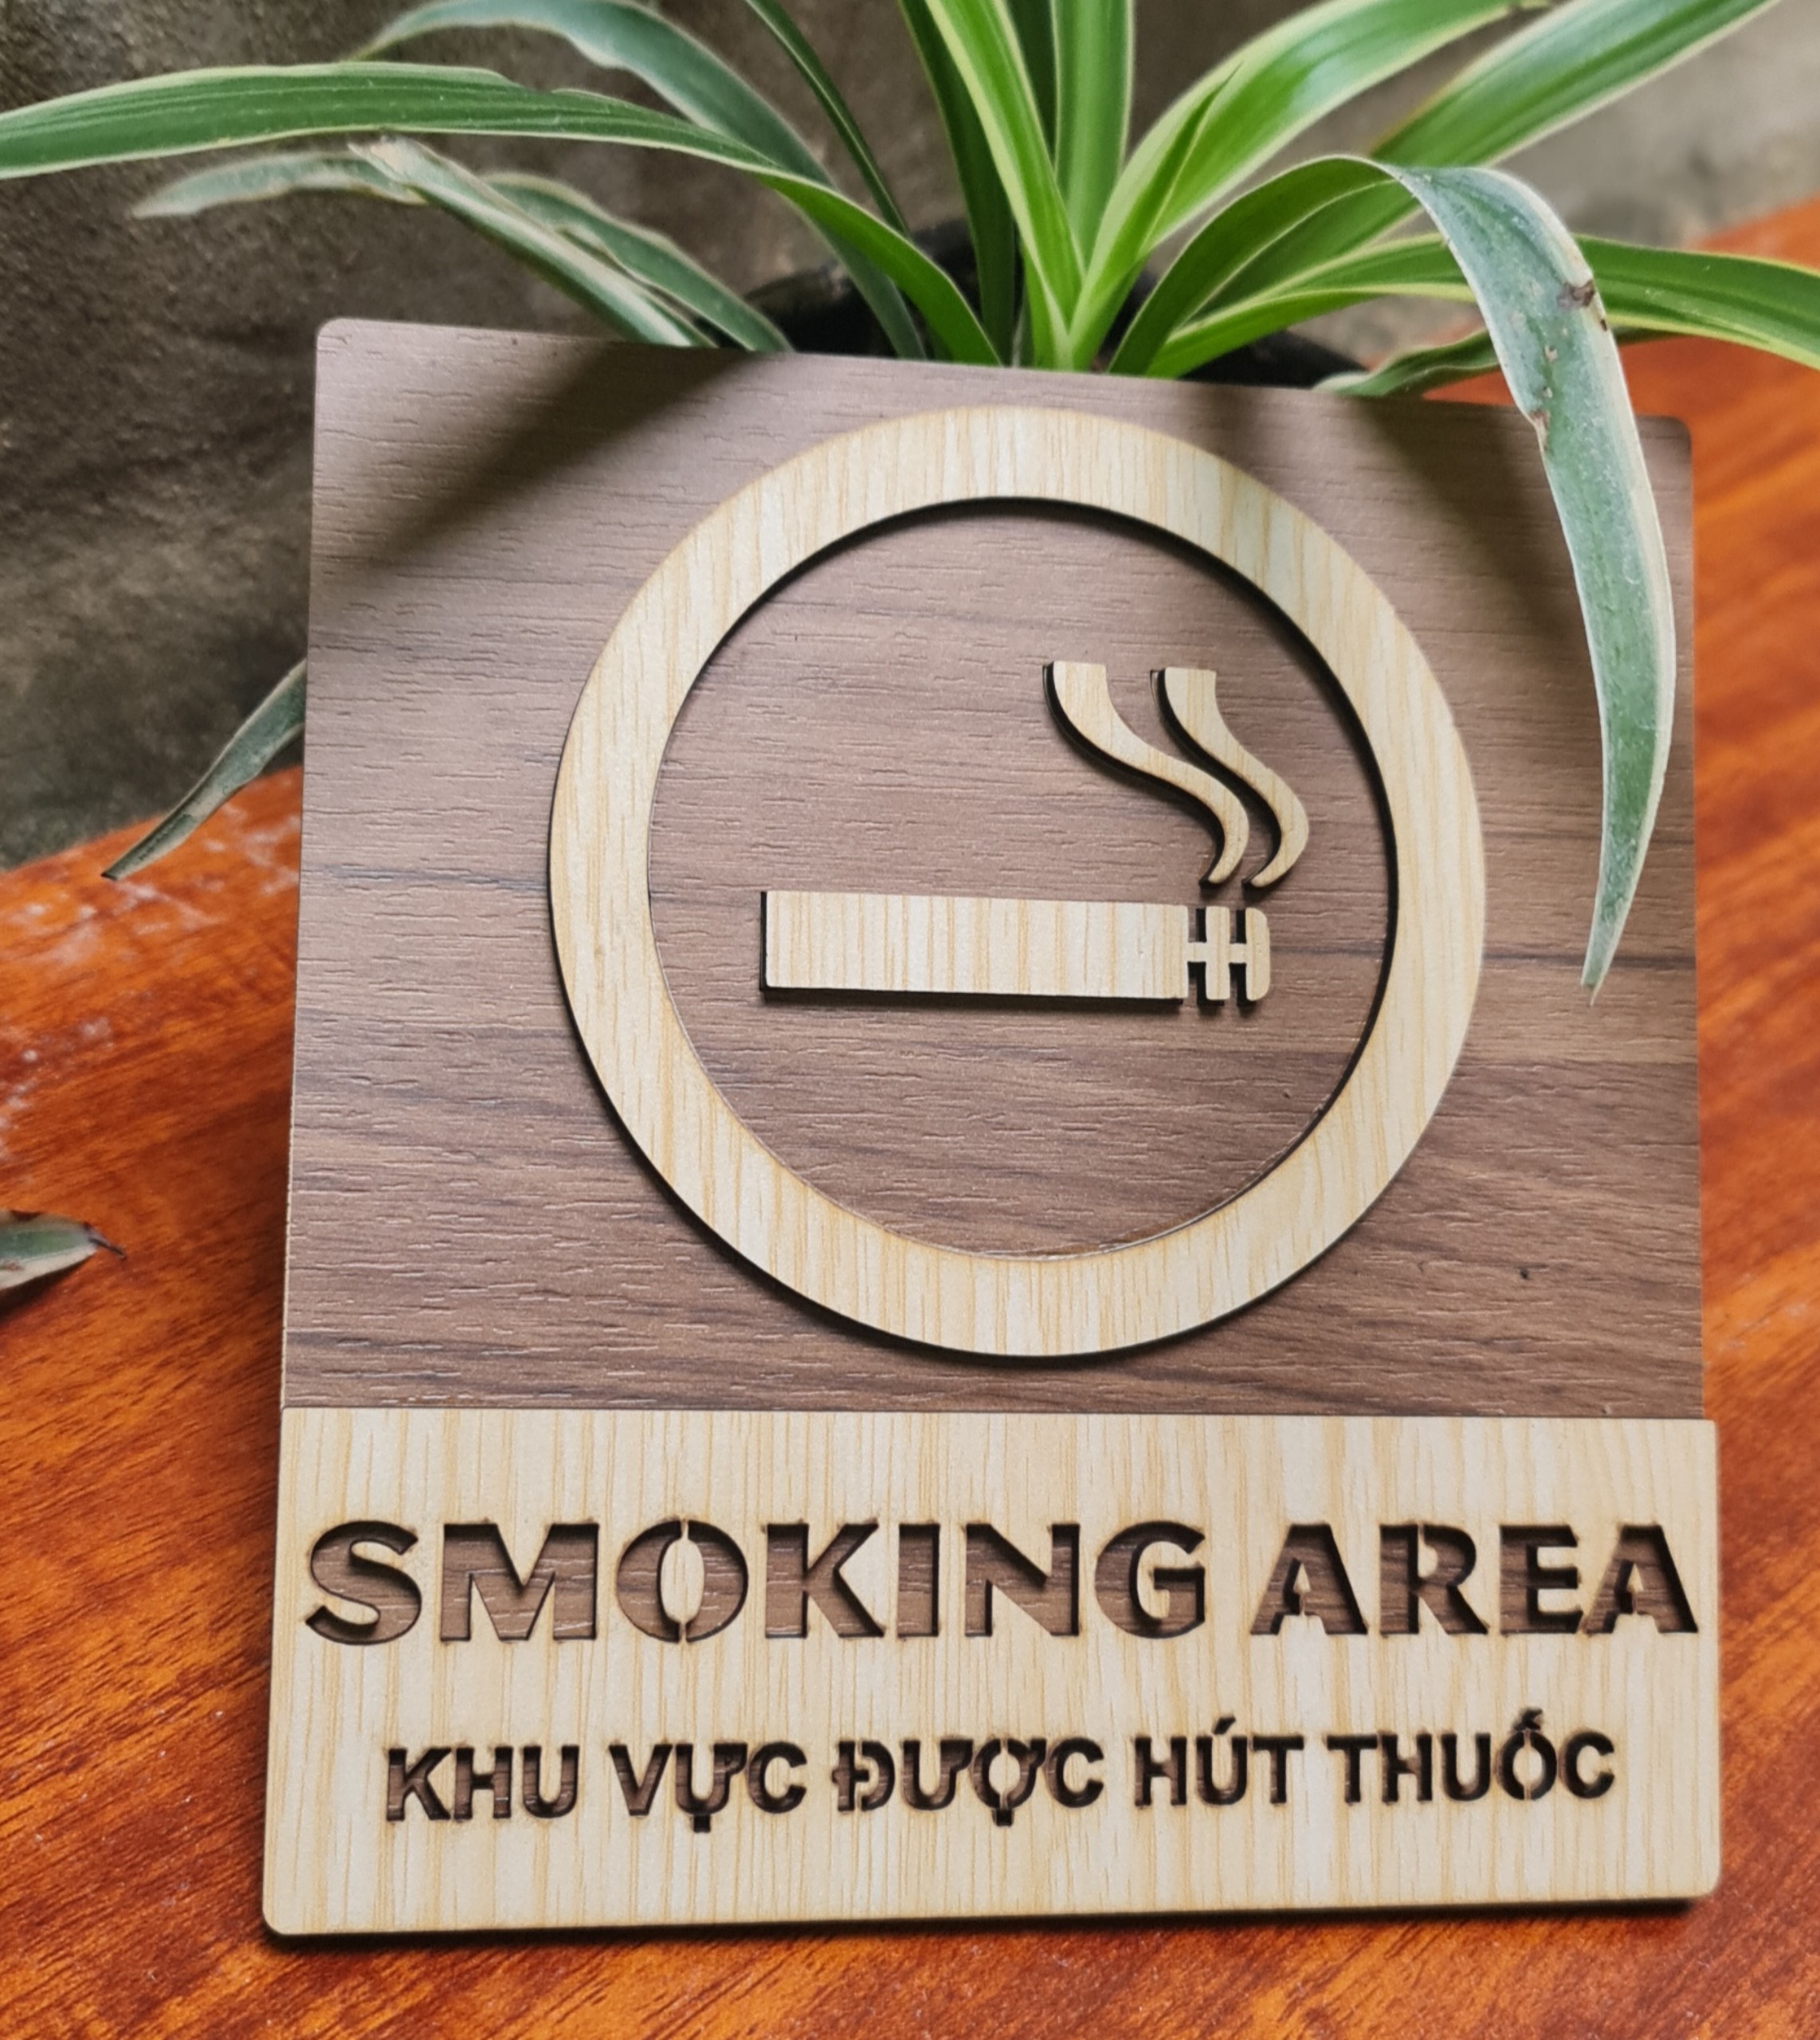 Bảng Cấm hút thuốc, biển báo No smoking, bảng báo Smoking area khu vực hút thuốc